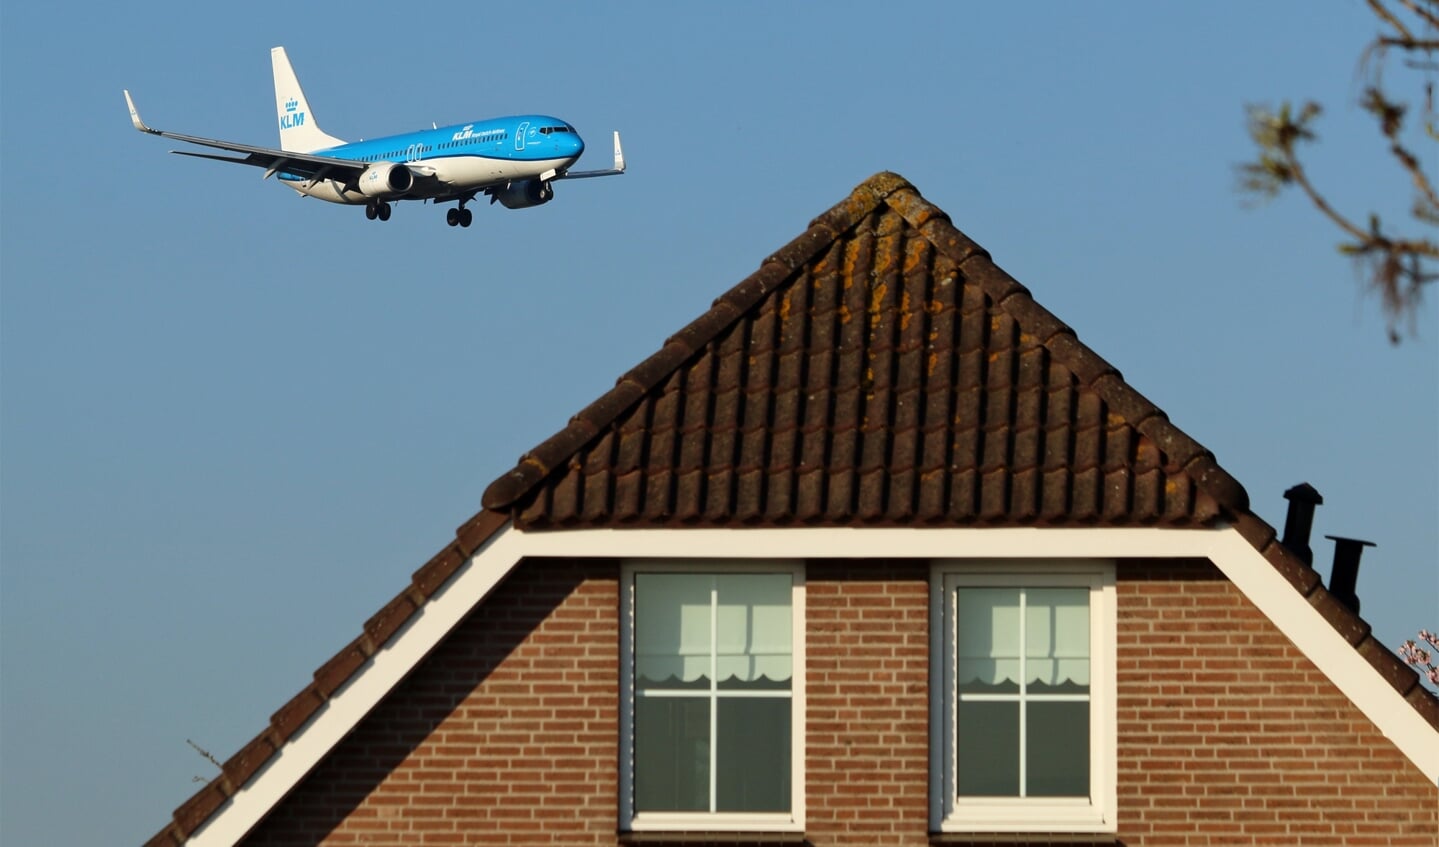 De raad wil grenzen voor de luchtvaart voor lawaai en milieu, en handhaving daarvan.